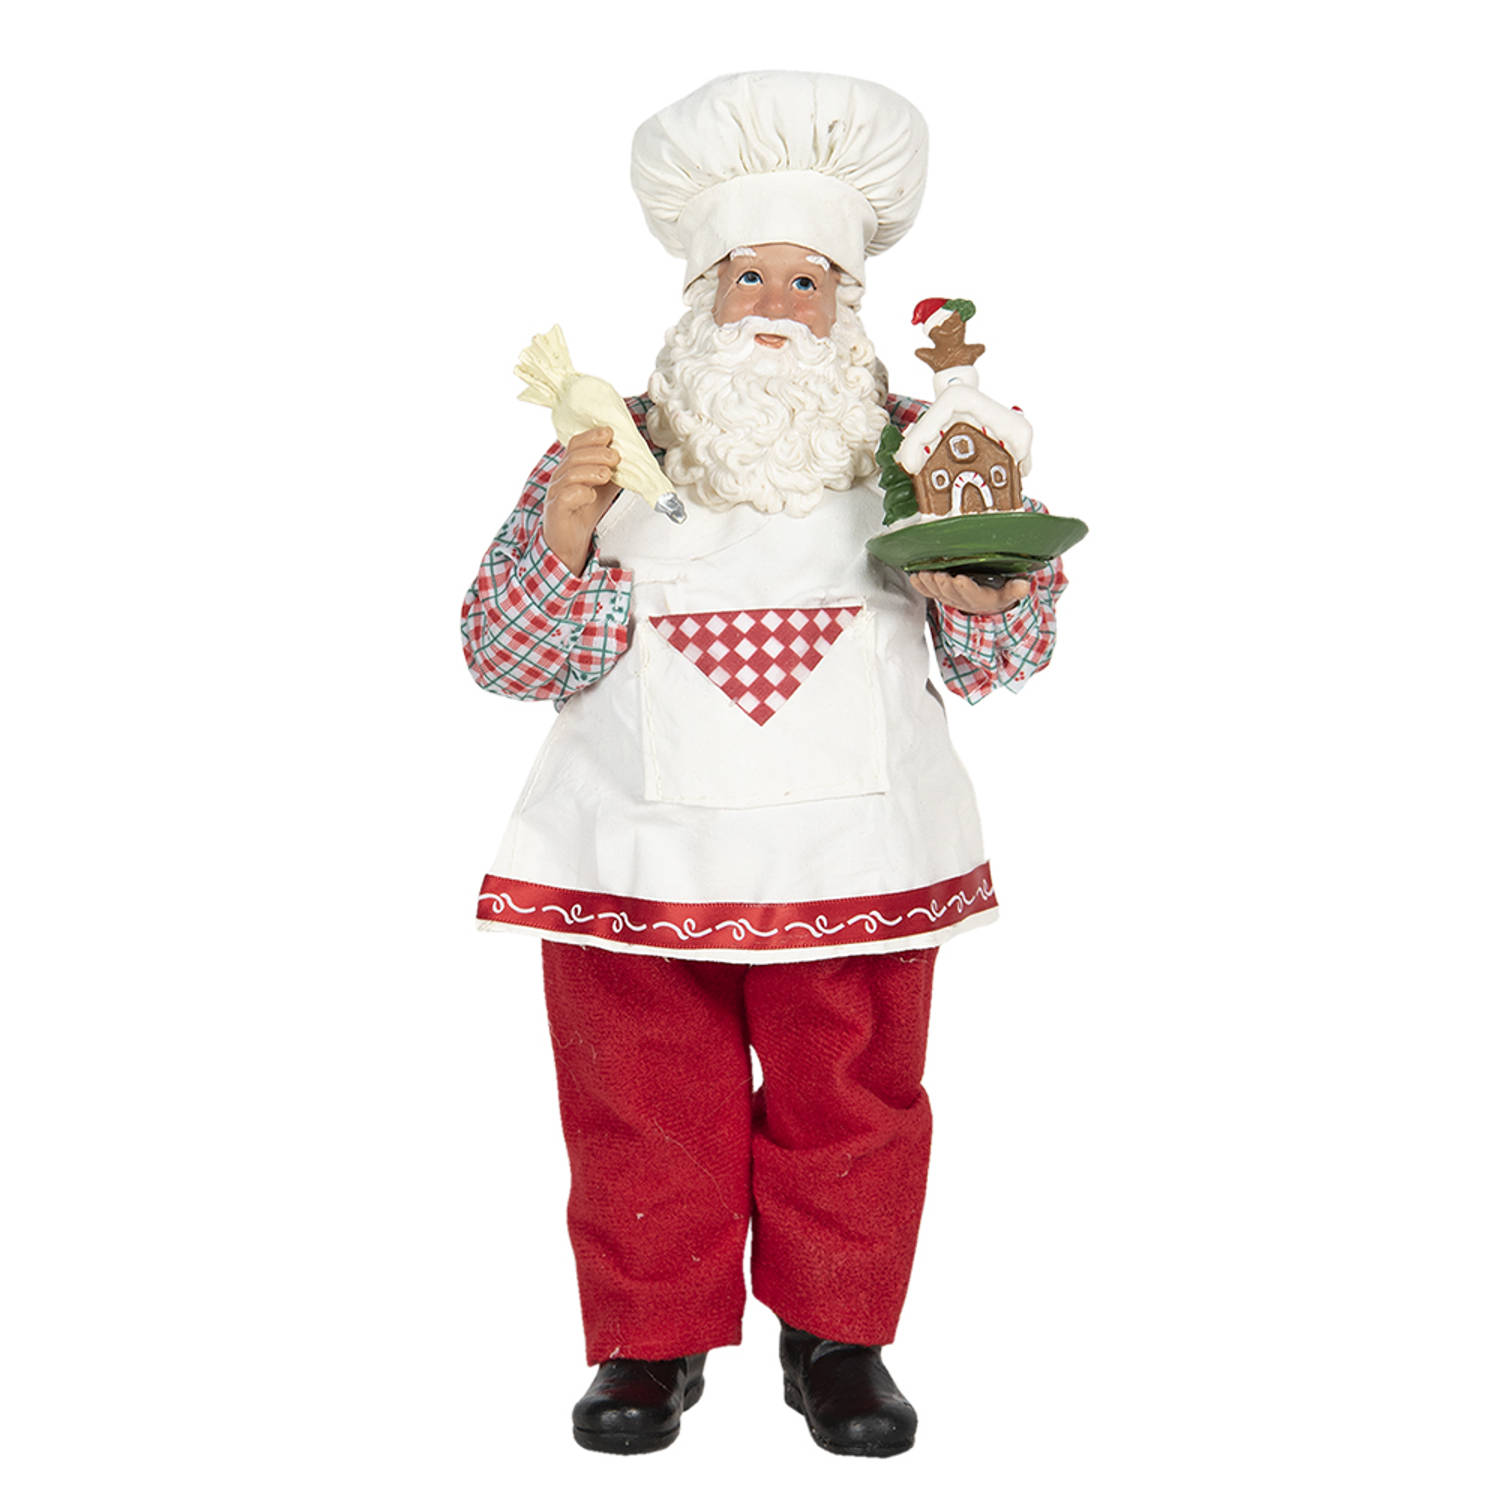 HAES DECO - Kerstman deco Figuur - Formaat 13x10x28 cm - Collectie: Who is Santa - Kleur Rood - Materiaal Textiel op kunststof - Kerst Figuur, Kerstdecoratie